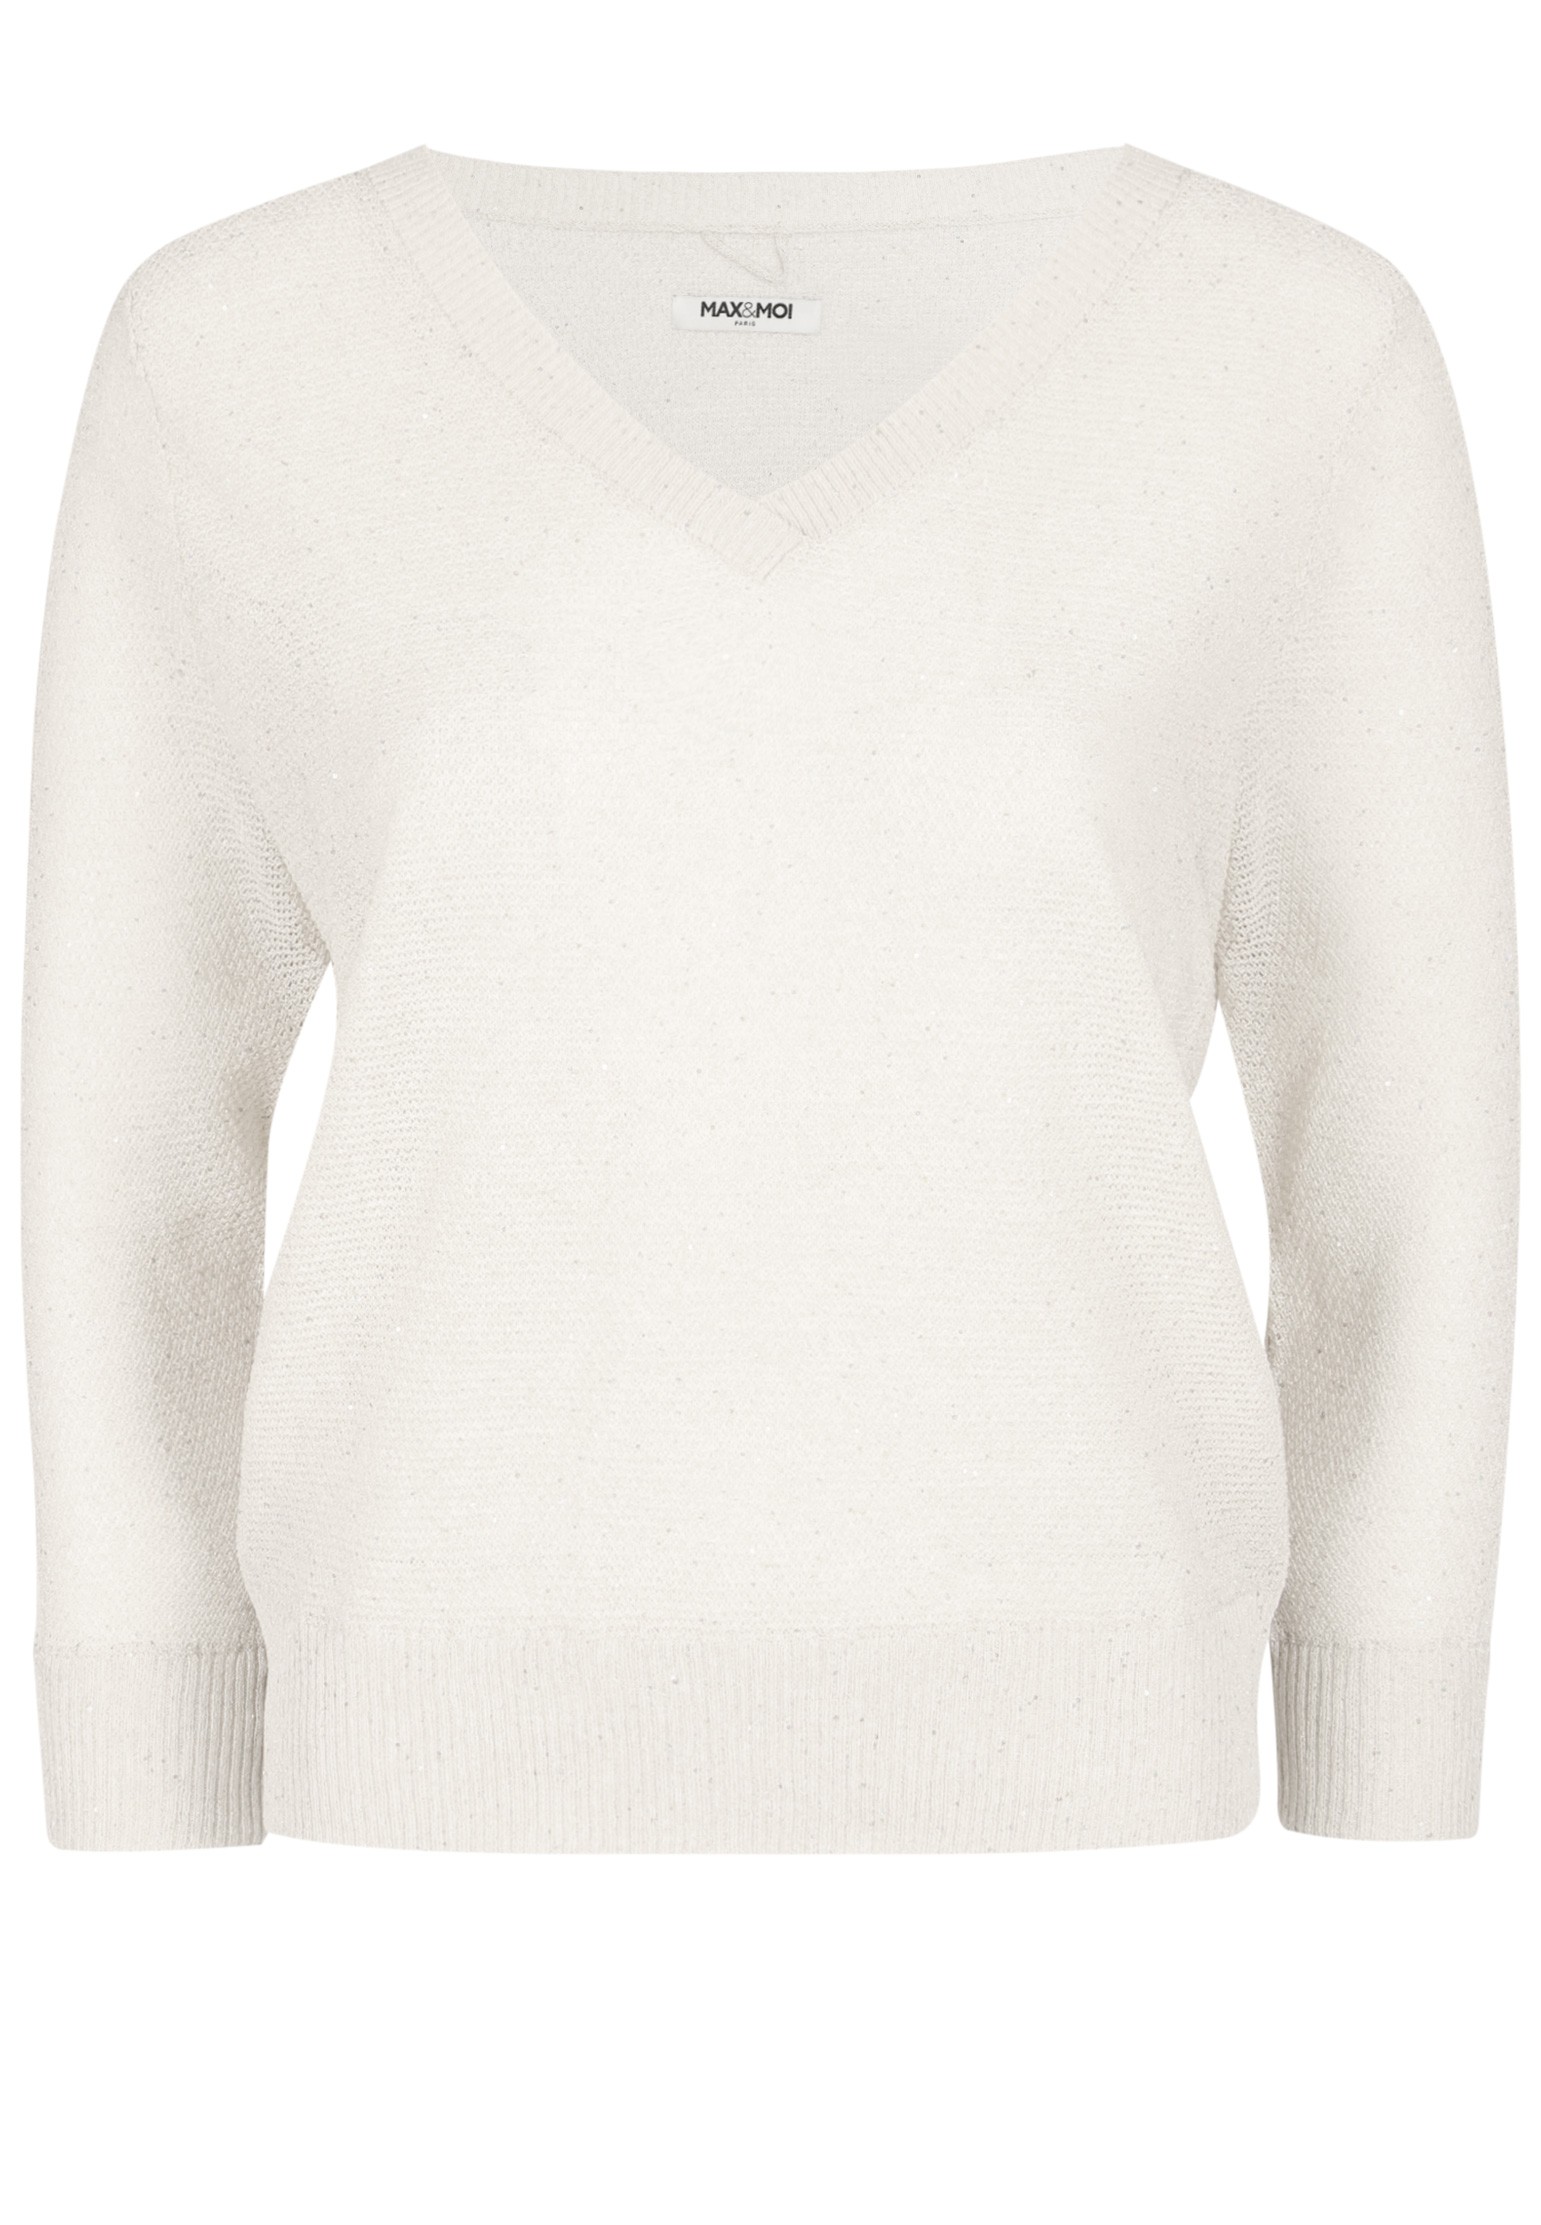 Пуловер женский 128109 белый L MAX & MOI. Цвет: белый